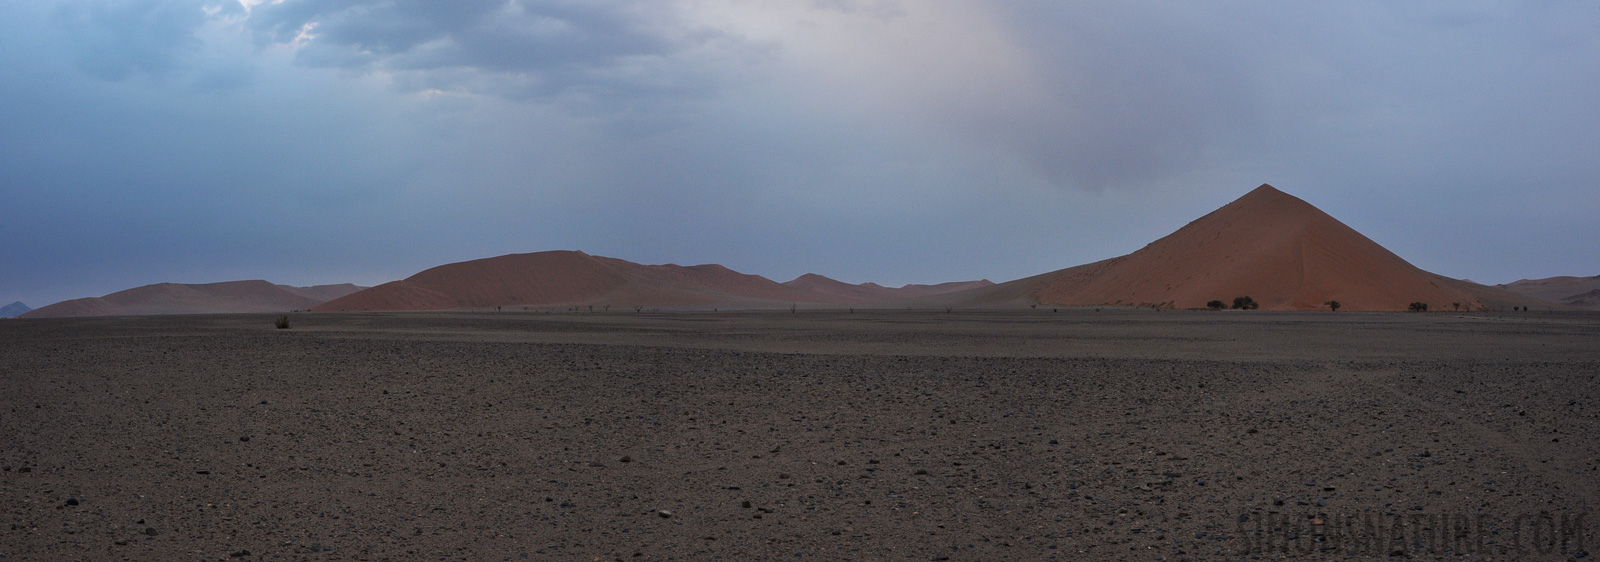 Namib-Naukluft National Park [28 mm, 1/50 sec at f / 11, ISO 1250]